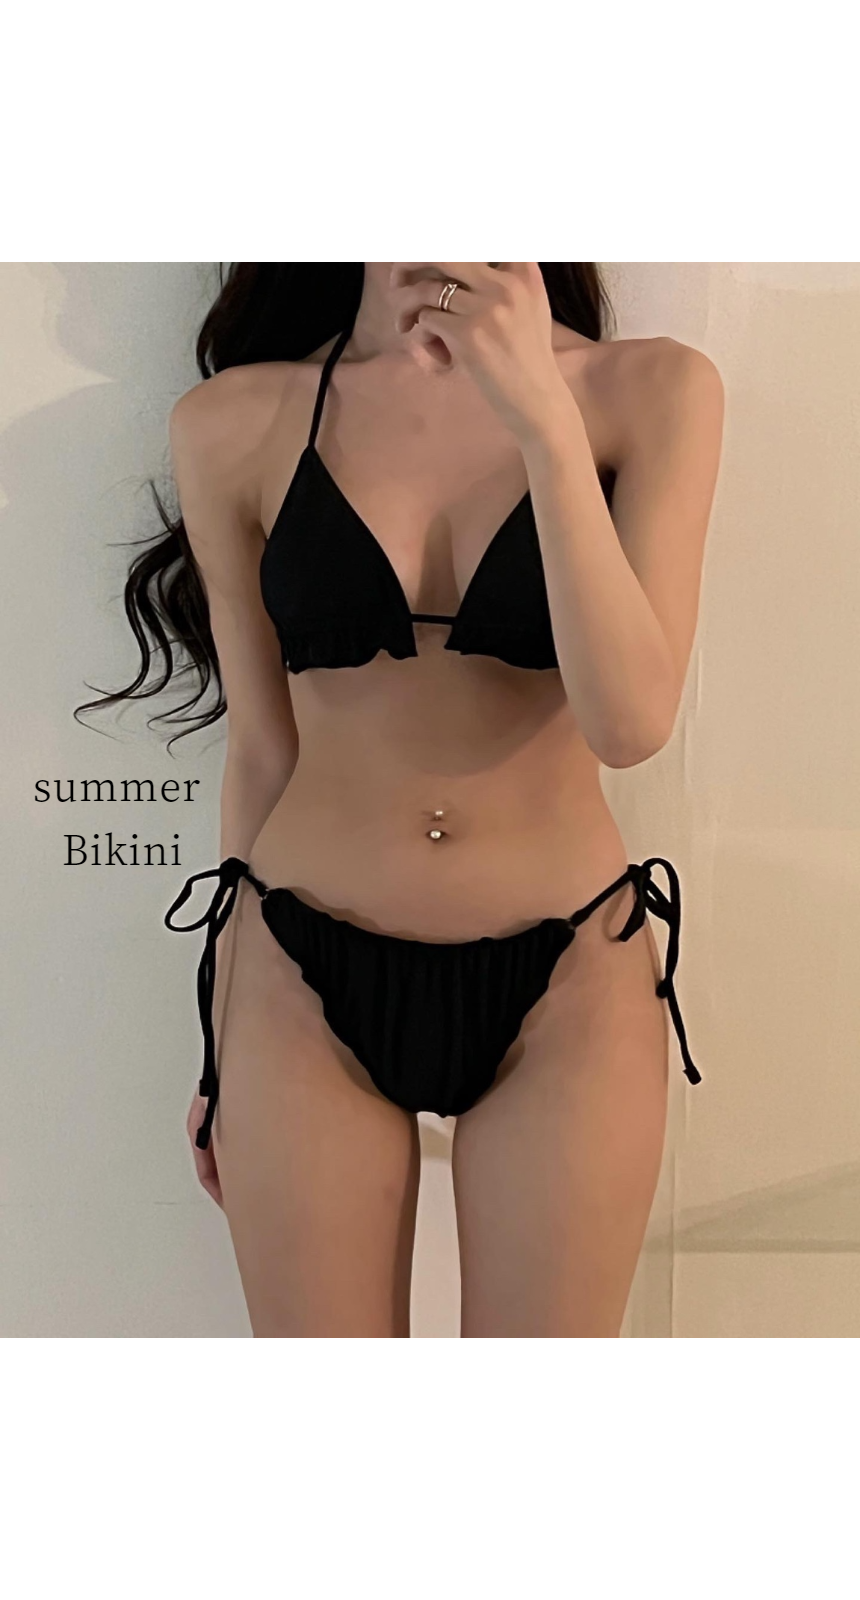 Summer Bikini